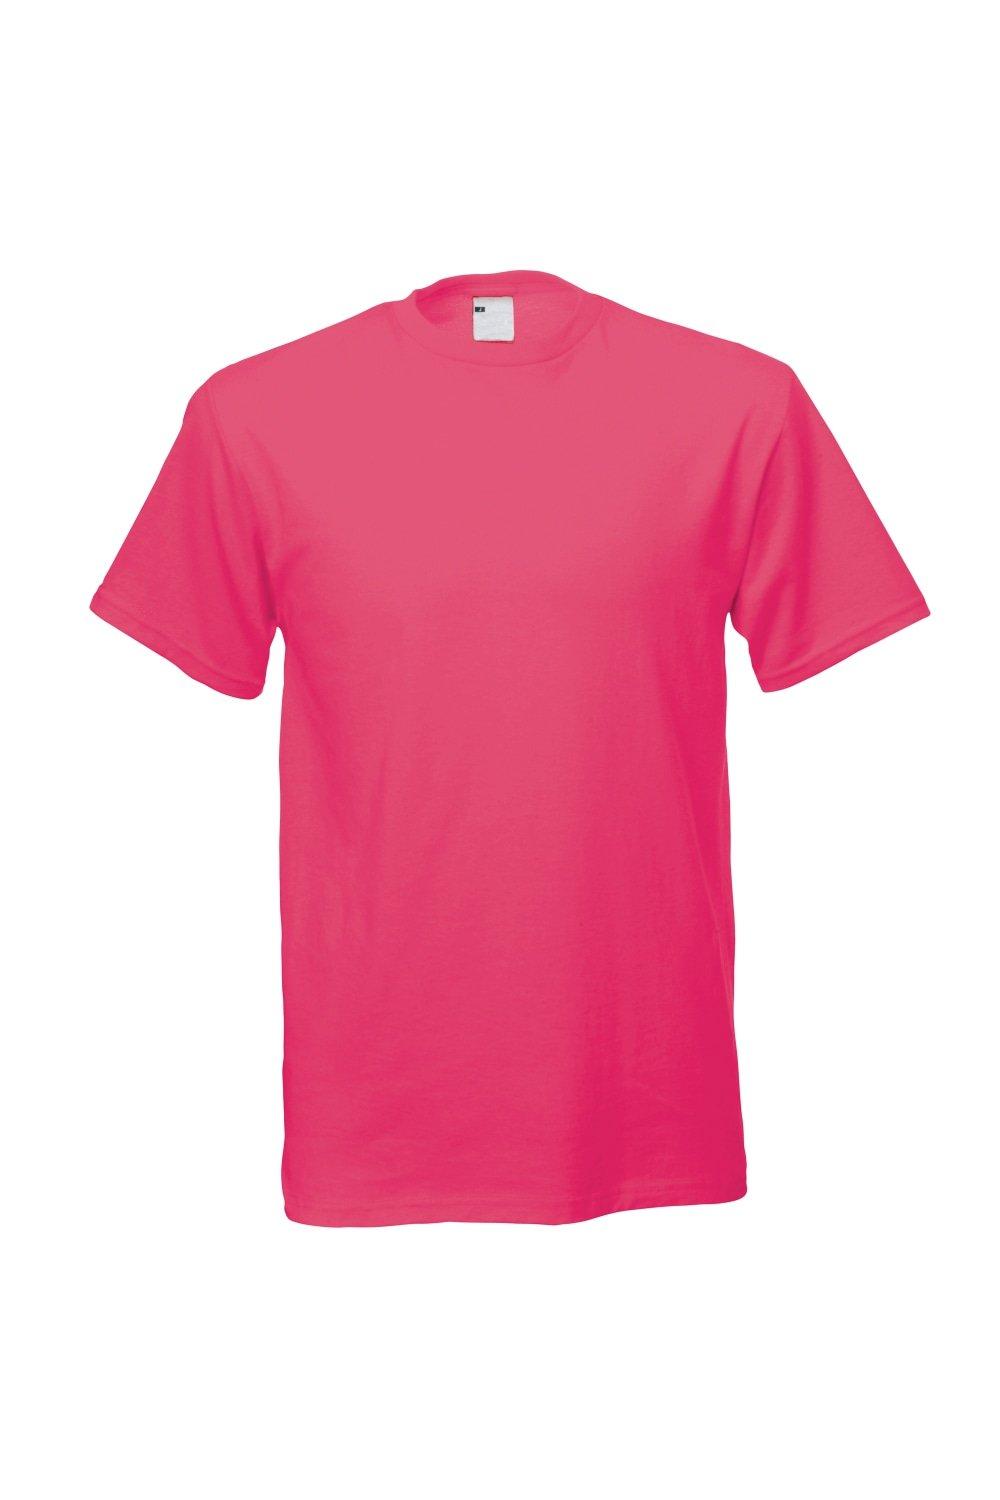 Повседневная футболка с коротким рукавом Universal Textiles, розовый